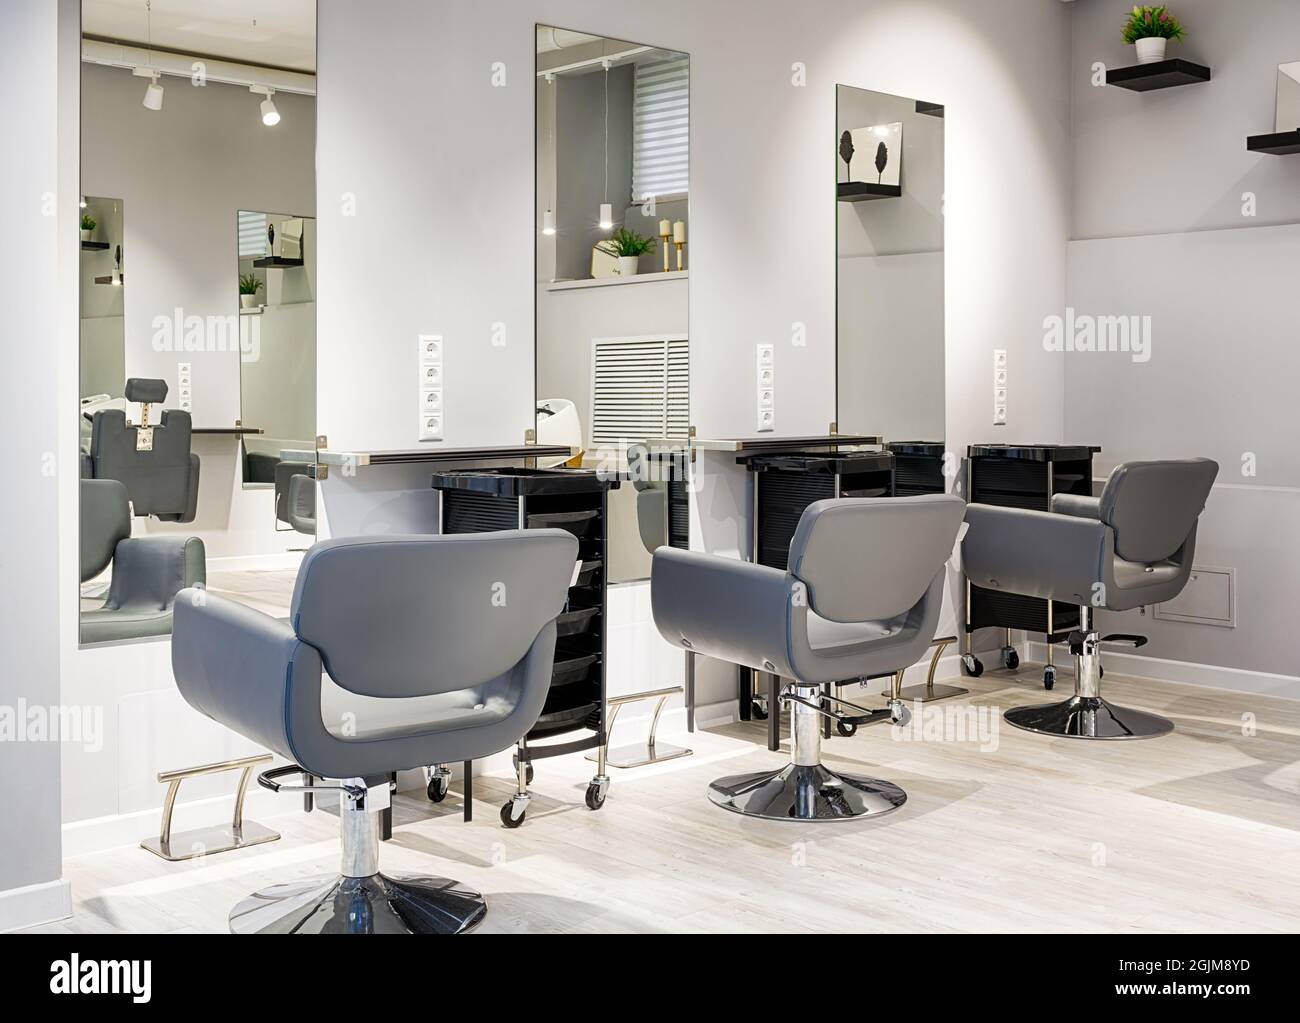 Parrucchiere interno, moderno negozio di bellezza dopo il rinnovo. Interno barbiere vuoto con specchi e sedie in pelle. Parrucchiere pulito e alla moda w Foto Stock